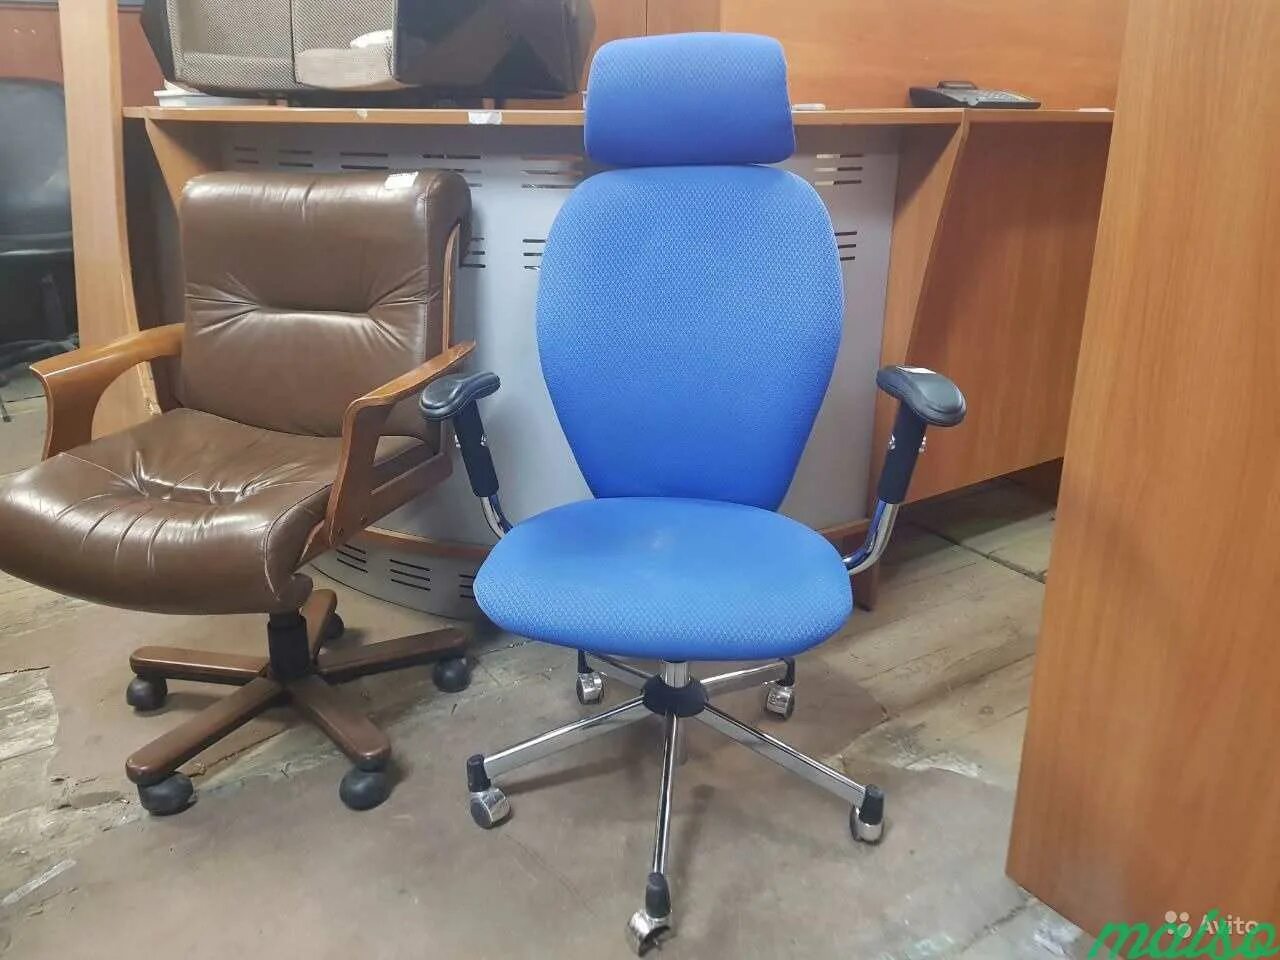 Кресло офисное б/у. Кресло для офиса б/у. Офисное кресло б/у искусственная кожа. Подлокотники кресла б/у 154х78.